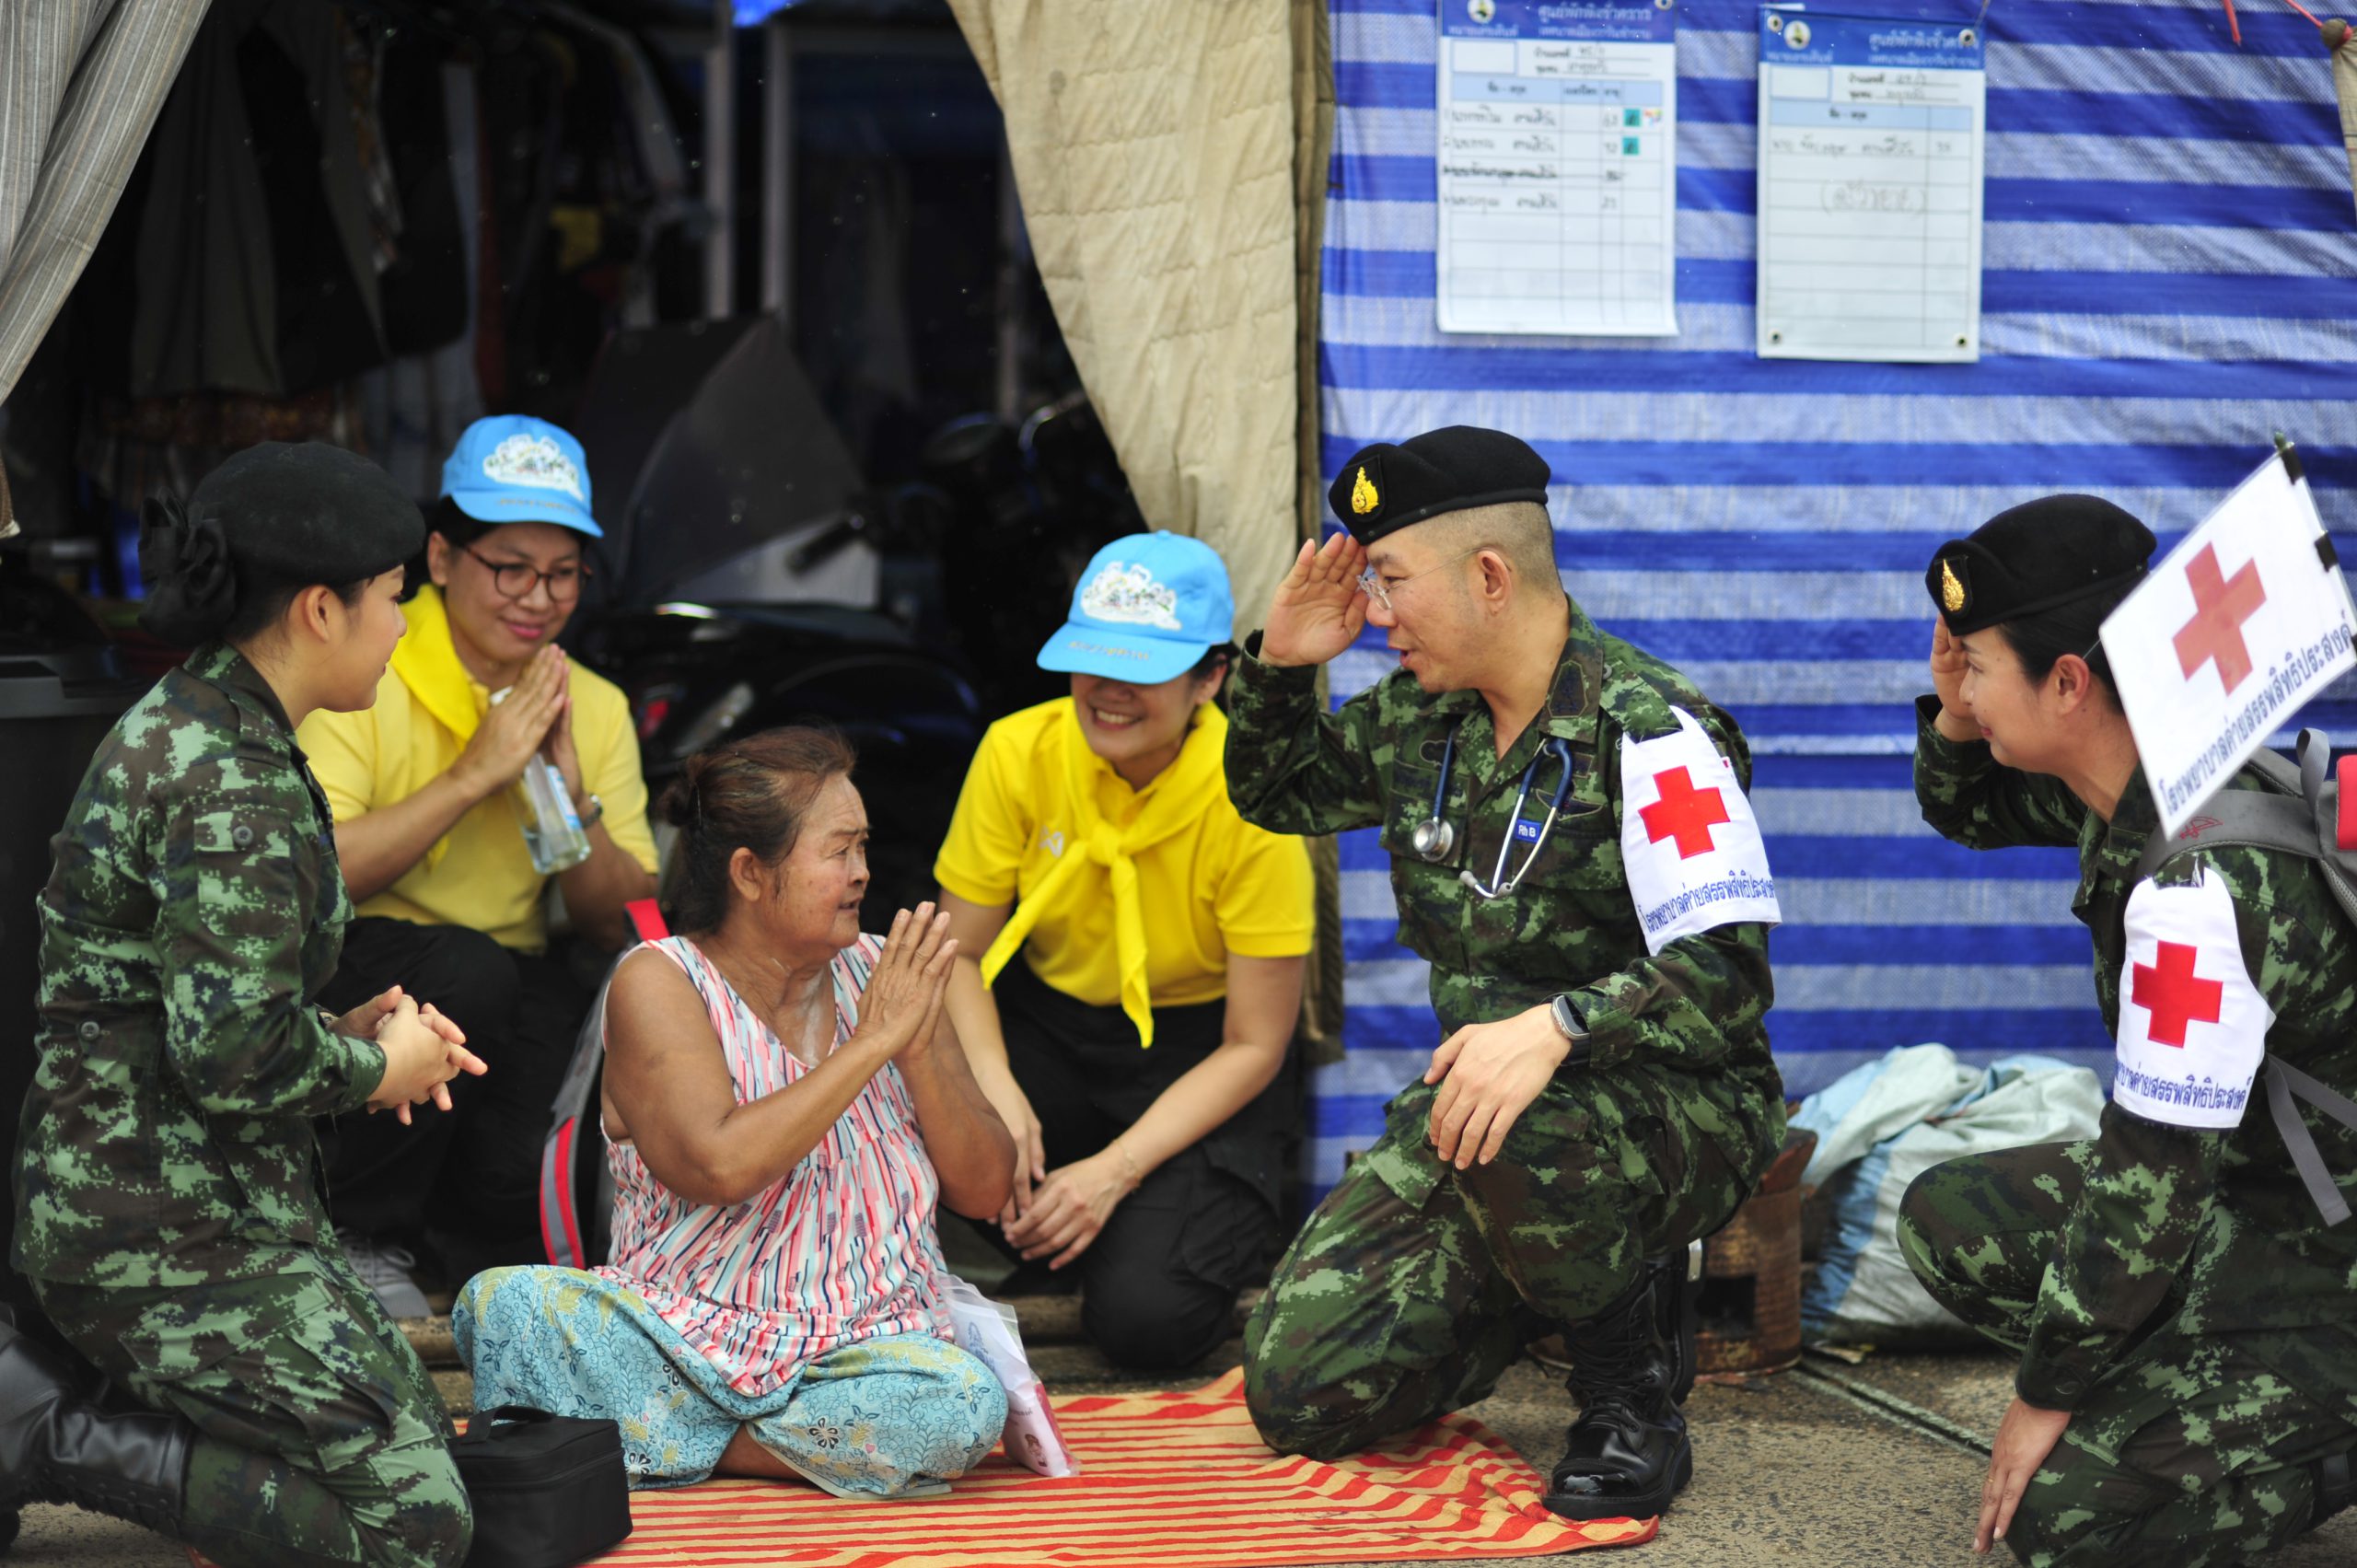 อุบลราชธานี-หมอทหาร รพ.ค่ายสรรพสิทธิประสงค์ ลงพื้นที่ตรวจสุขภาพชาวบ้านประสบภัยน้ำท่วม